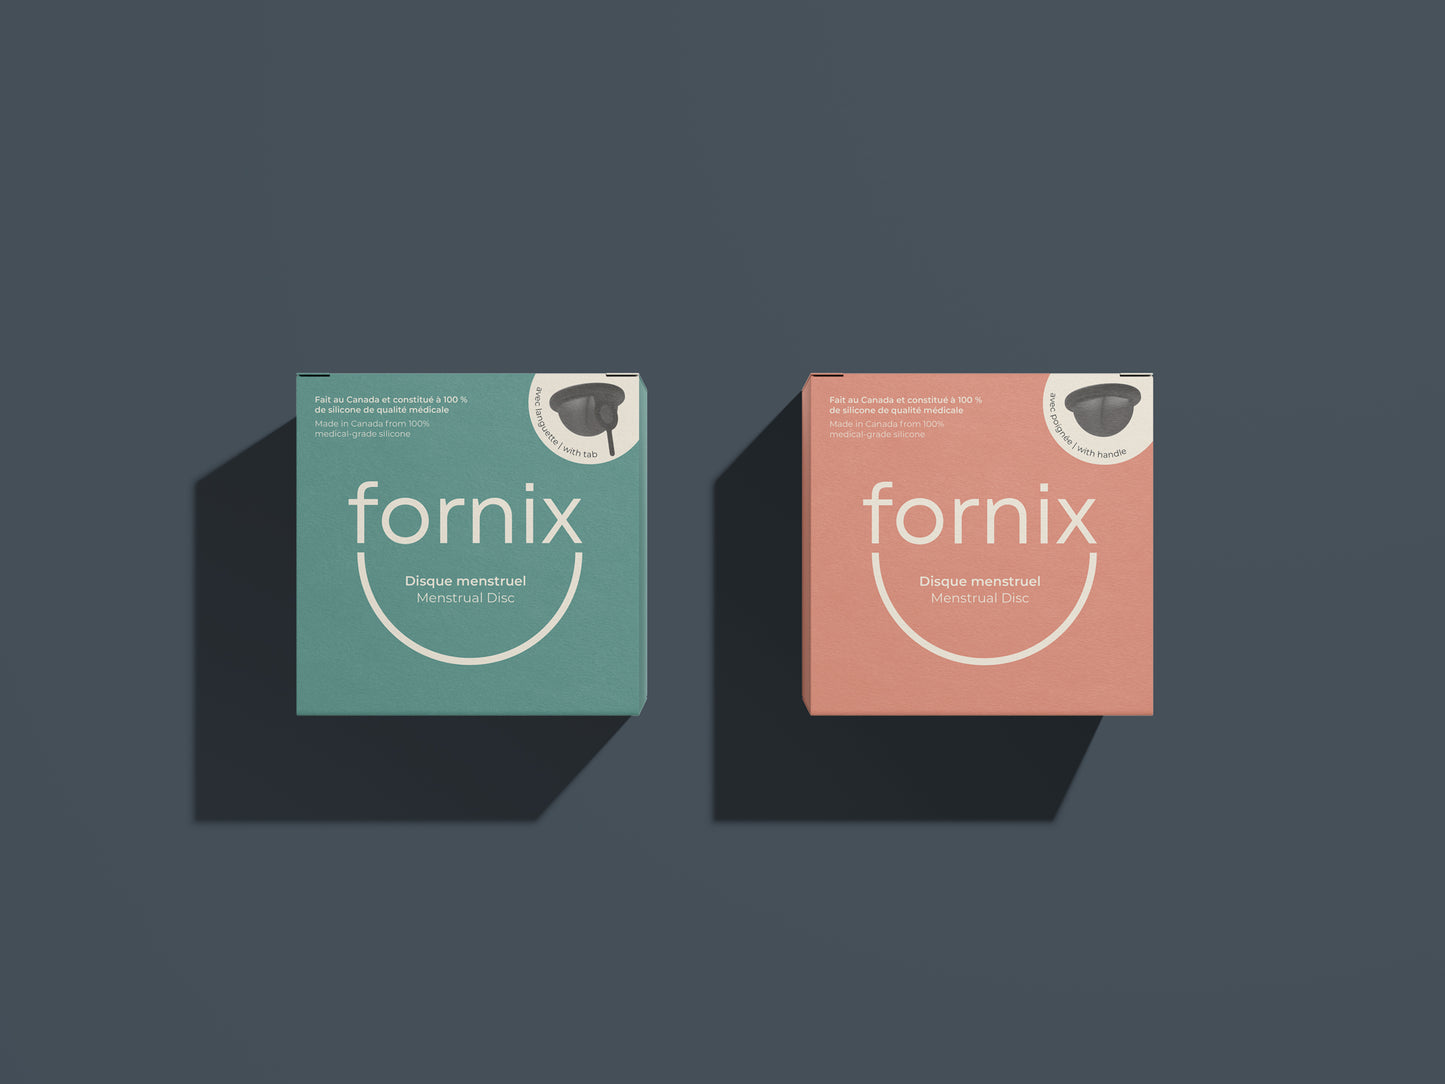 Disque menstruel Fornix avec poignée et disque menstruel Fornix avec languette 
Fornix Menstrual Disc With Handle and Fornix Menstrual Disc With Tab